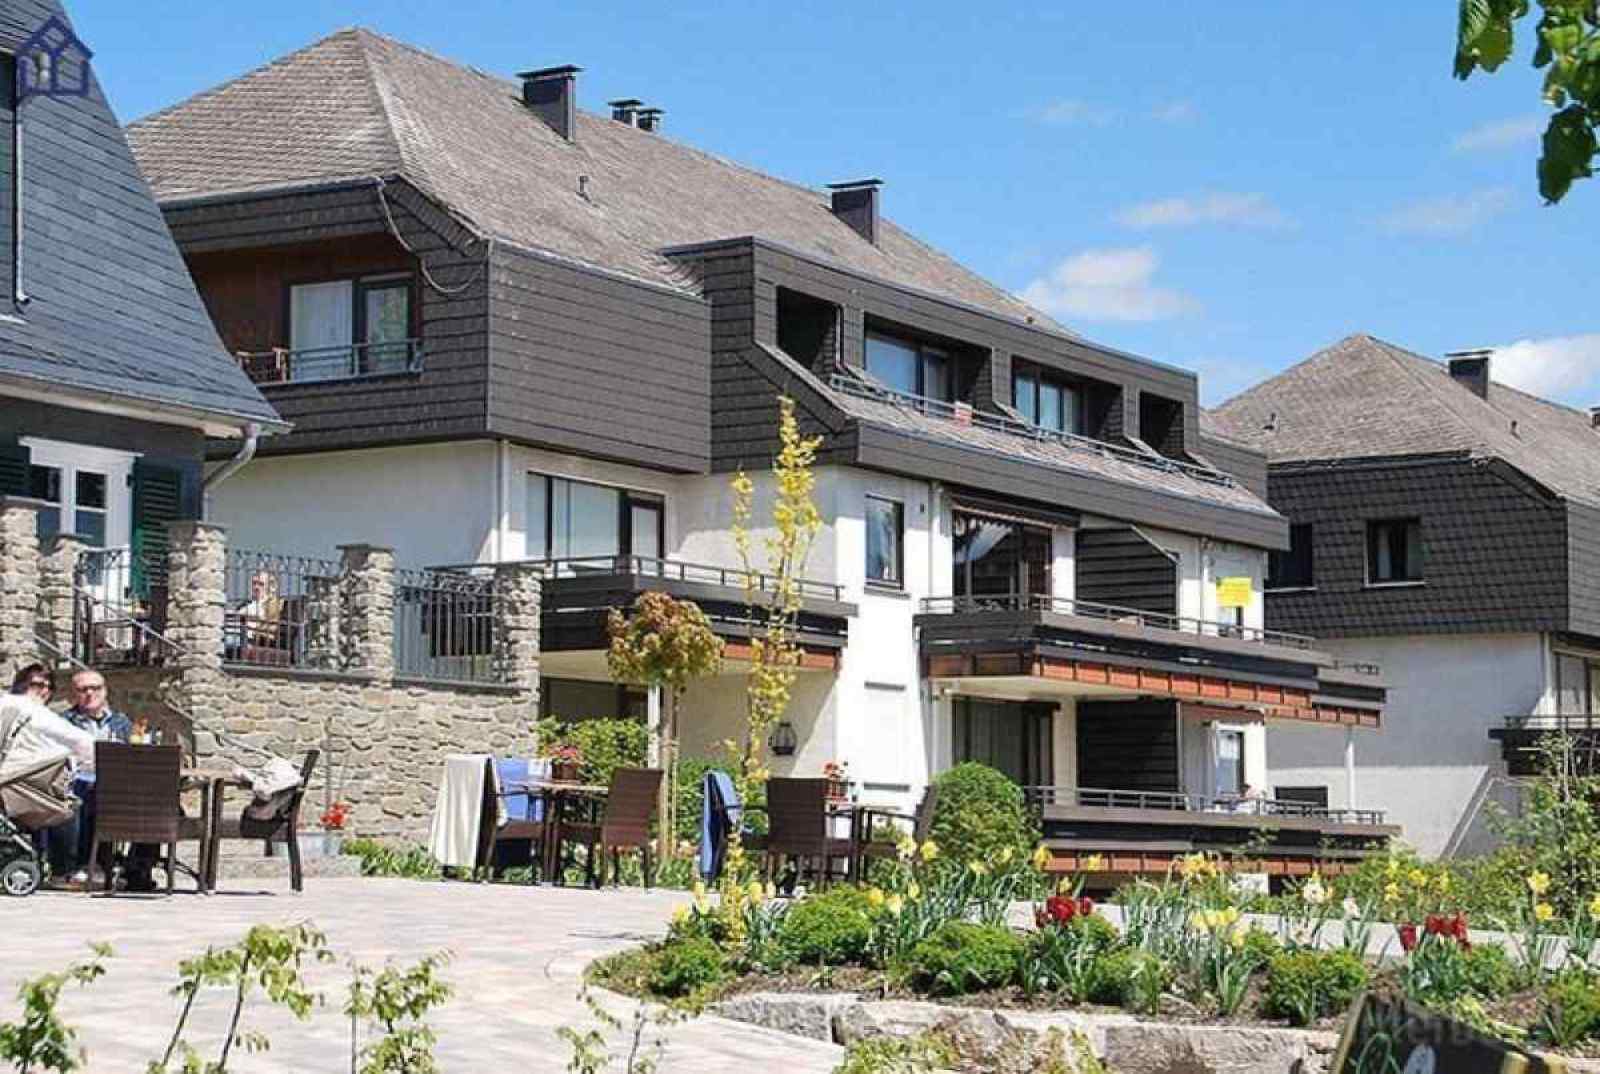 Mooi 4 persoons vakantieappartement in Winterberg, vlakbij het skigebied. - Duitsland - Europa - Winterberg